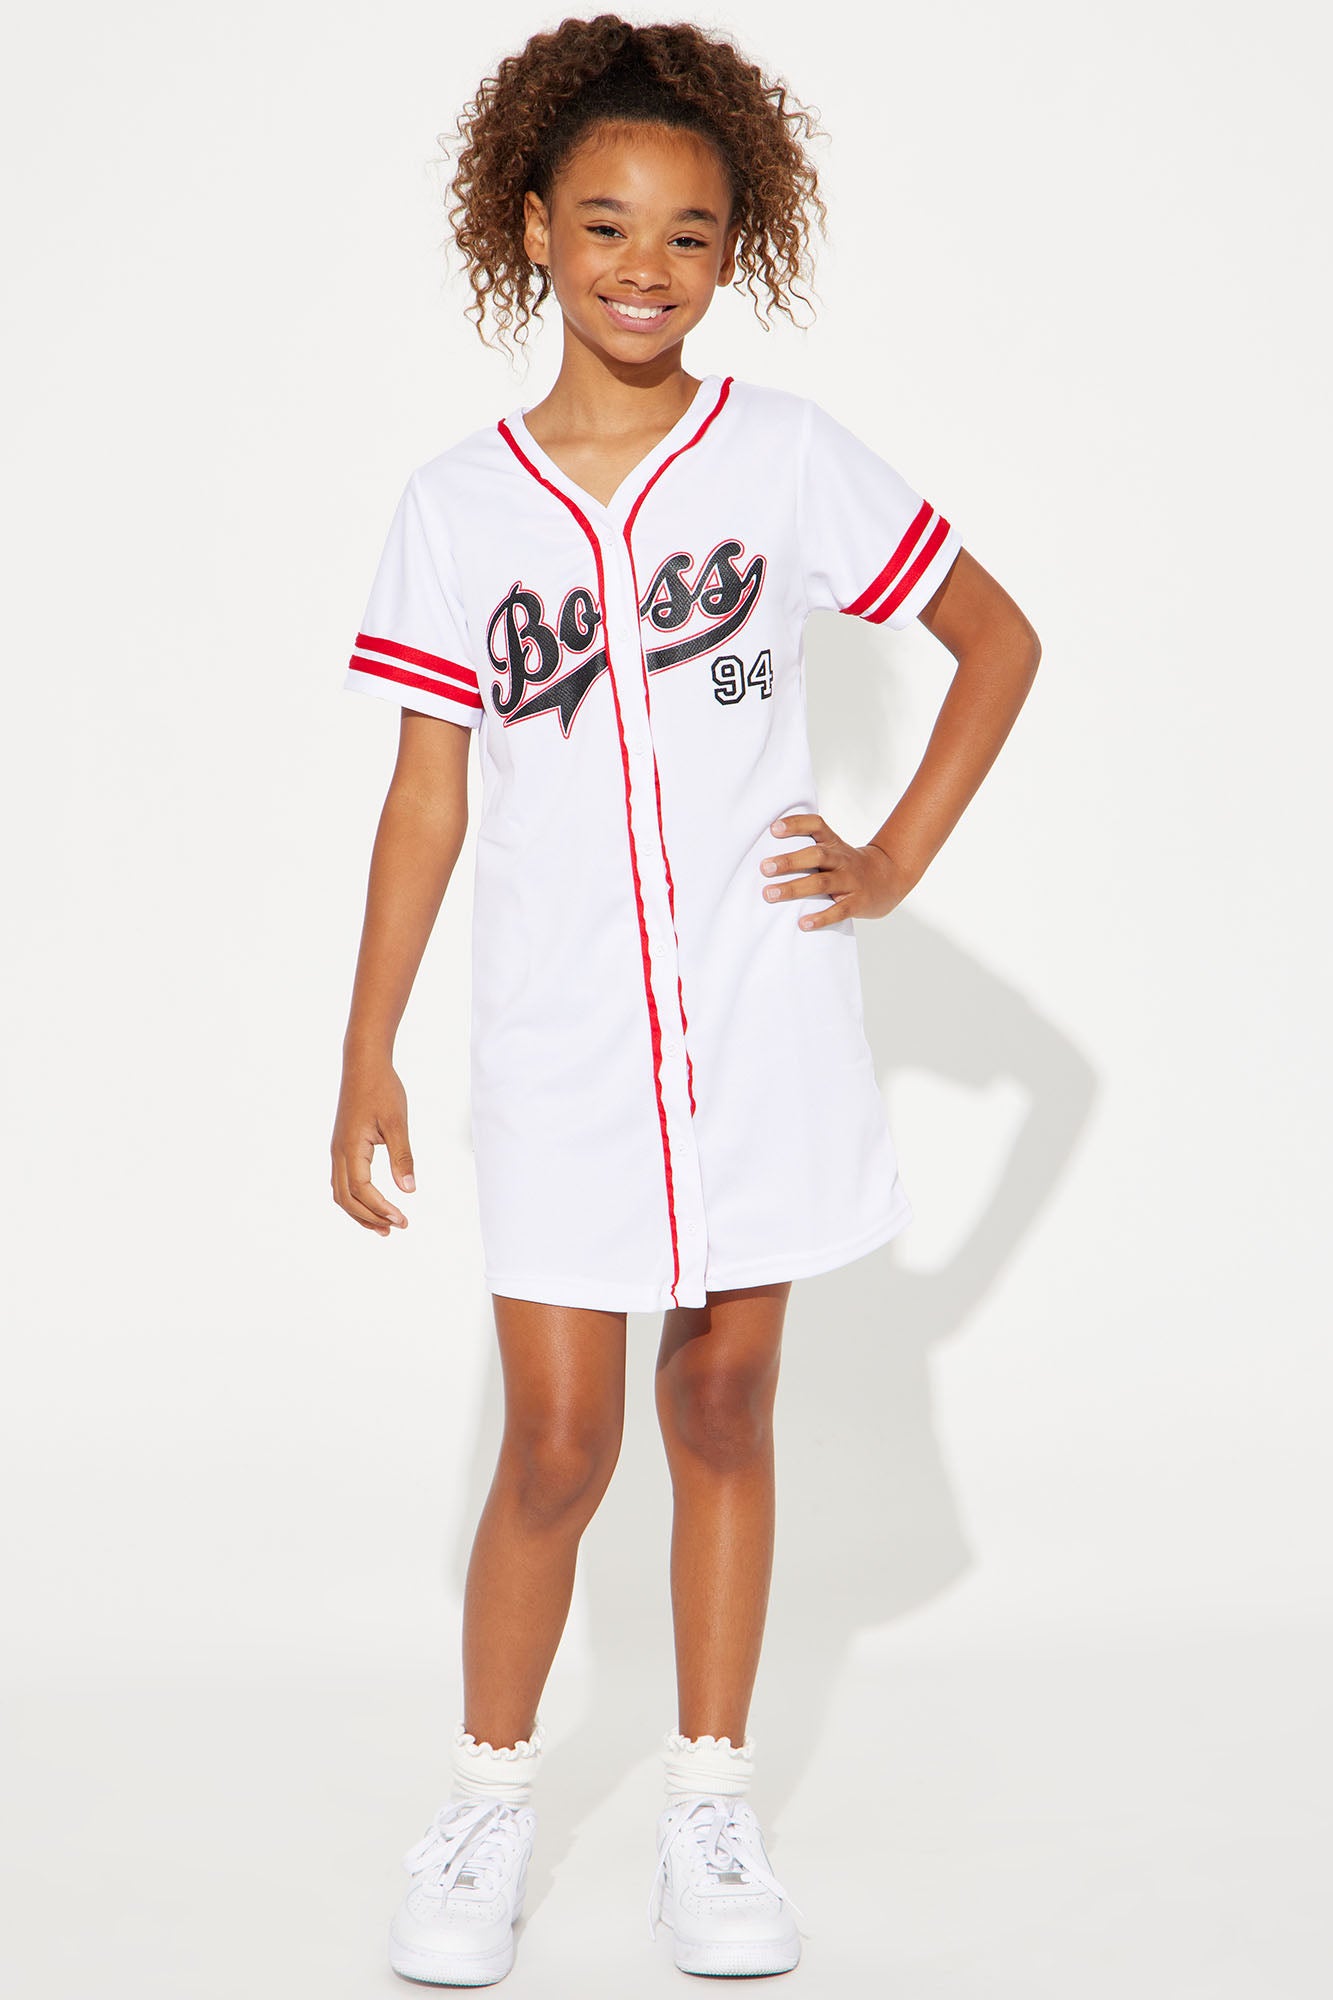 Baseball Jersey Dresses Women, Jersey Dress Women Short